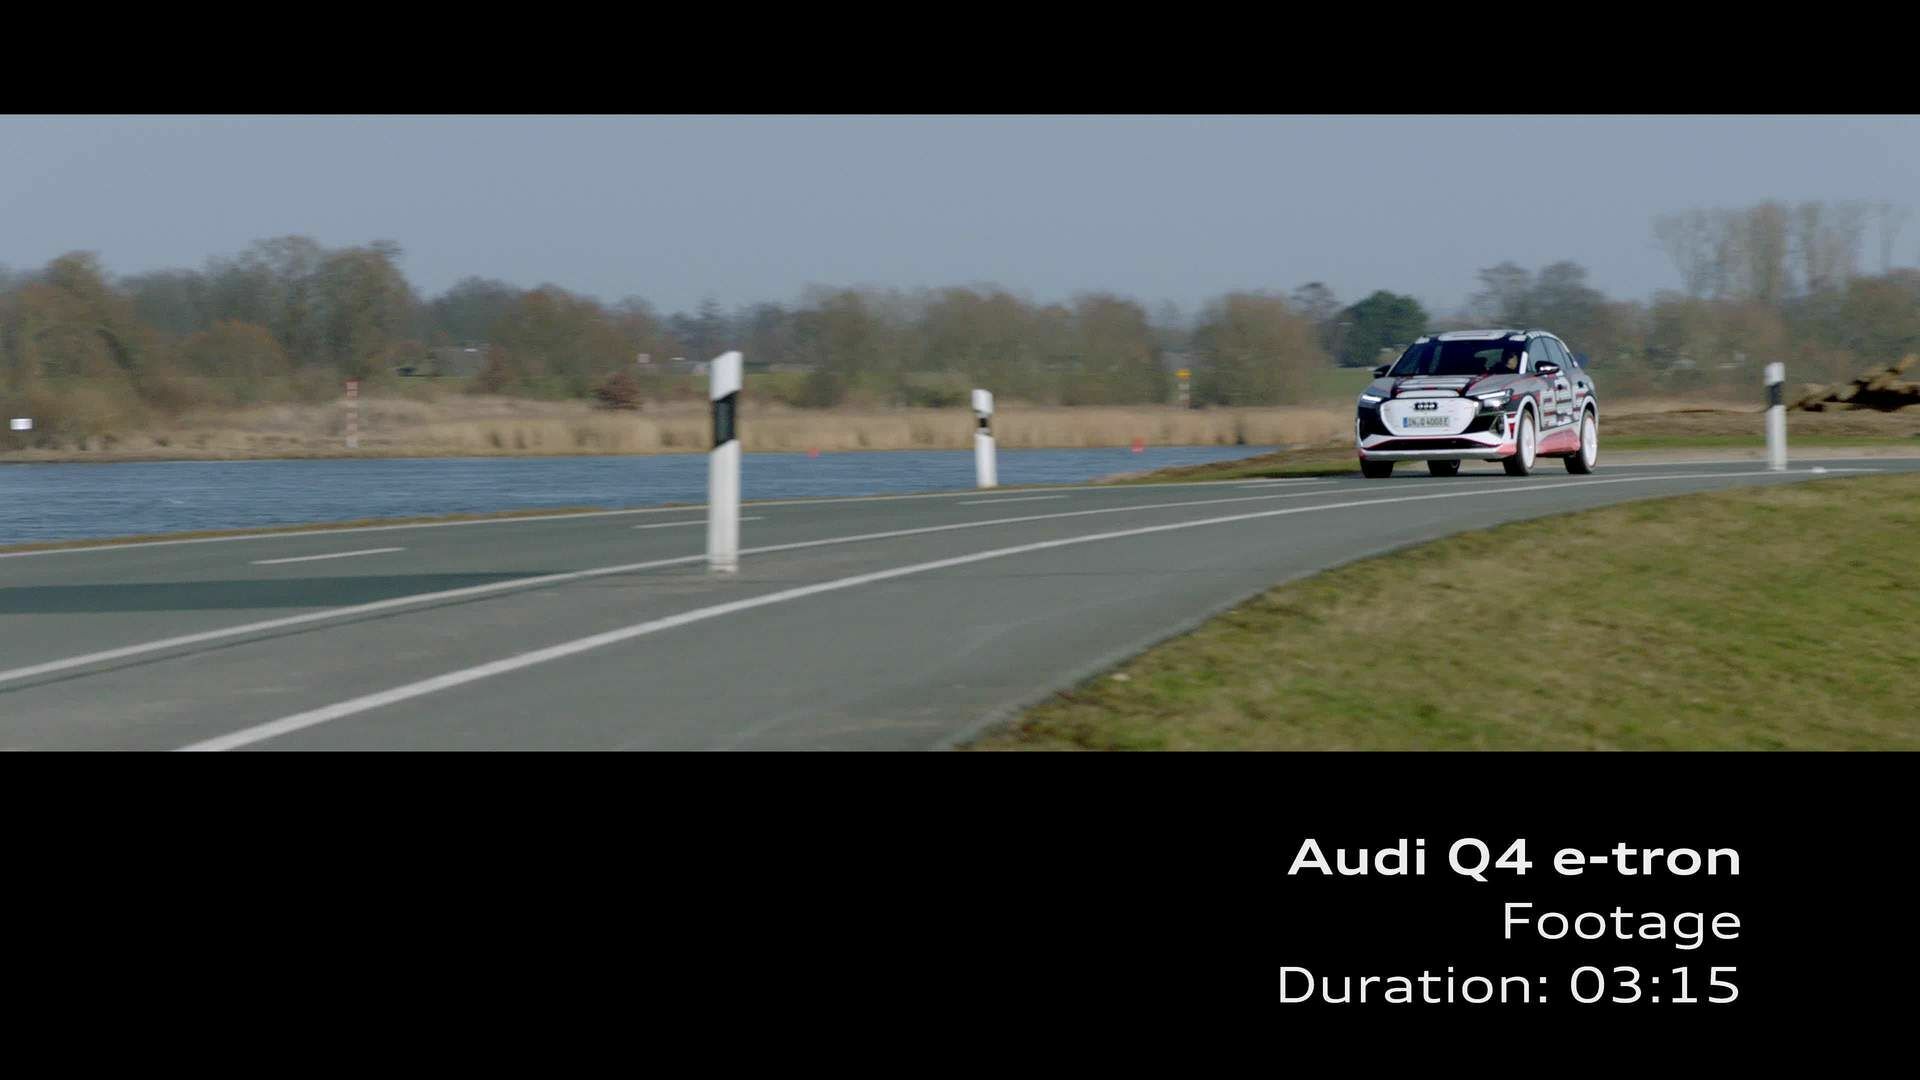 Footage: Fahraufnahmen des Audi Q4 e-tron